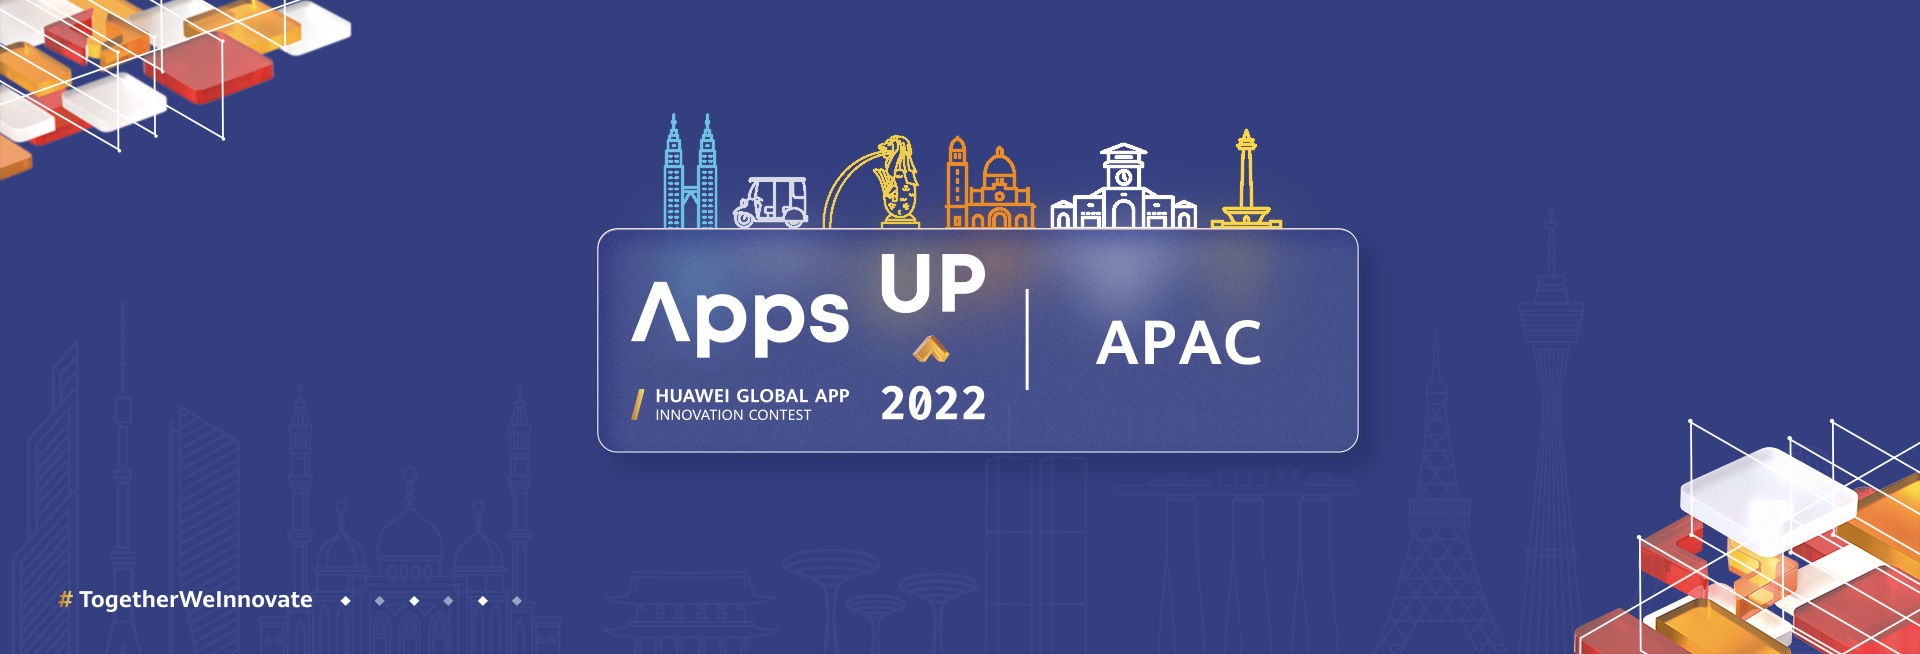 Cuộc thi Apps UP 2022 của Huawei Mobile Services với giải thưởng tiền mặt trị giá 200,000 USD